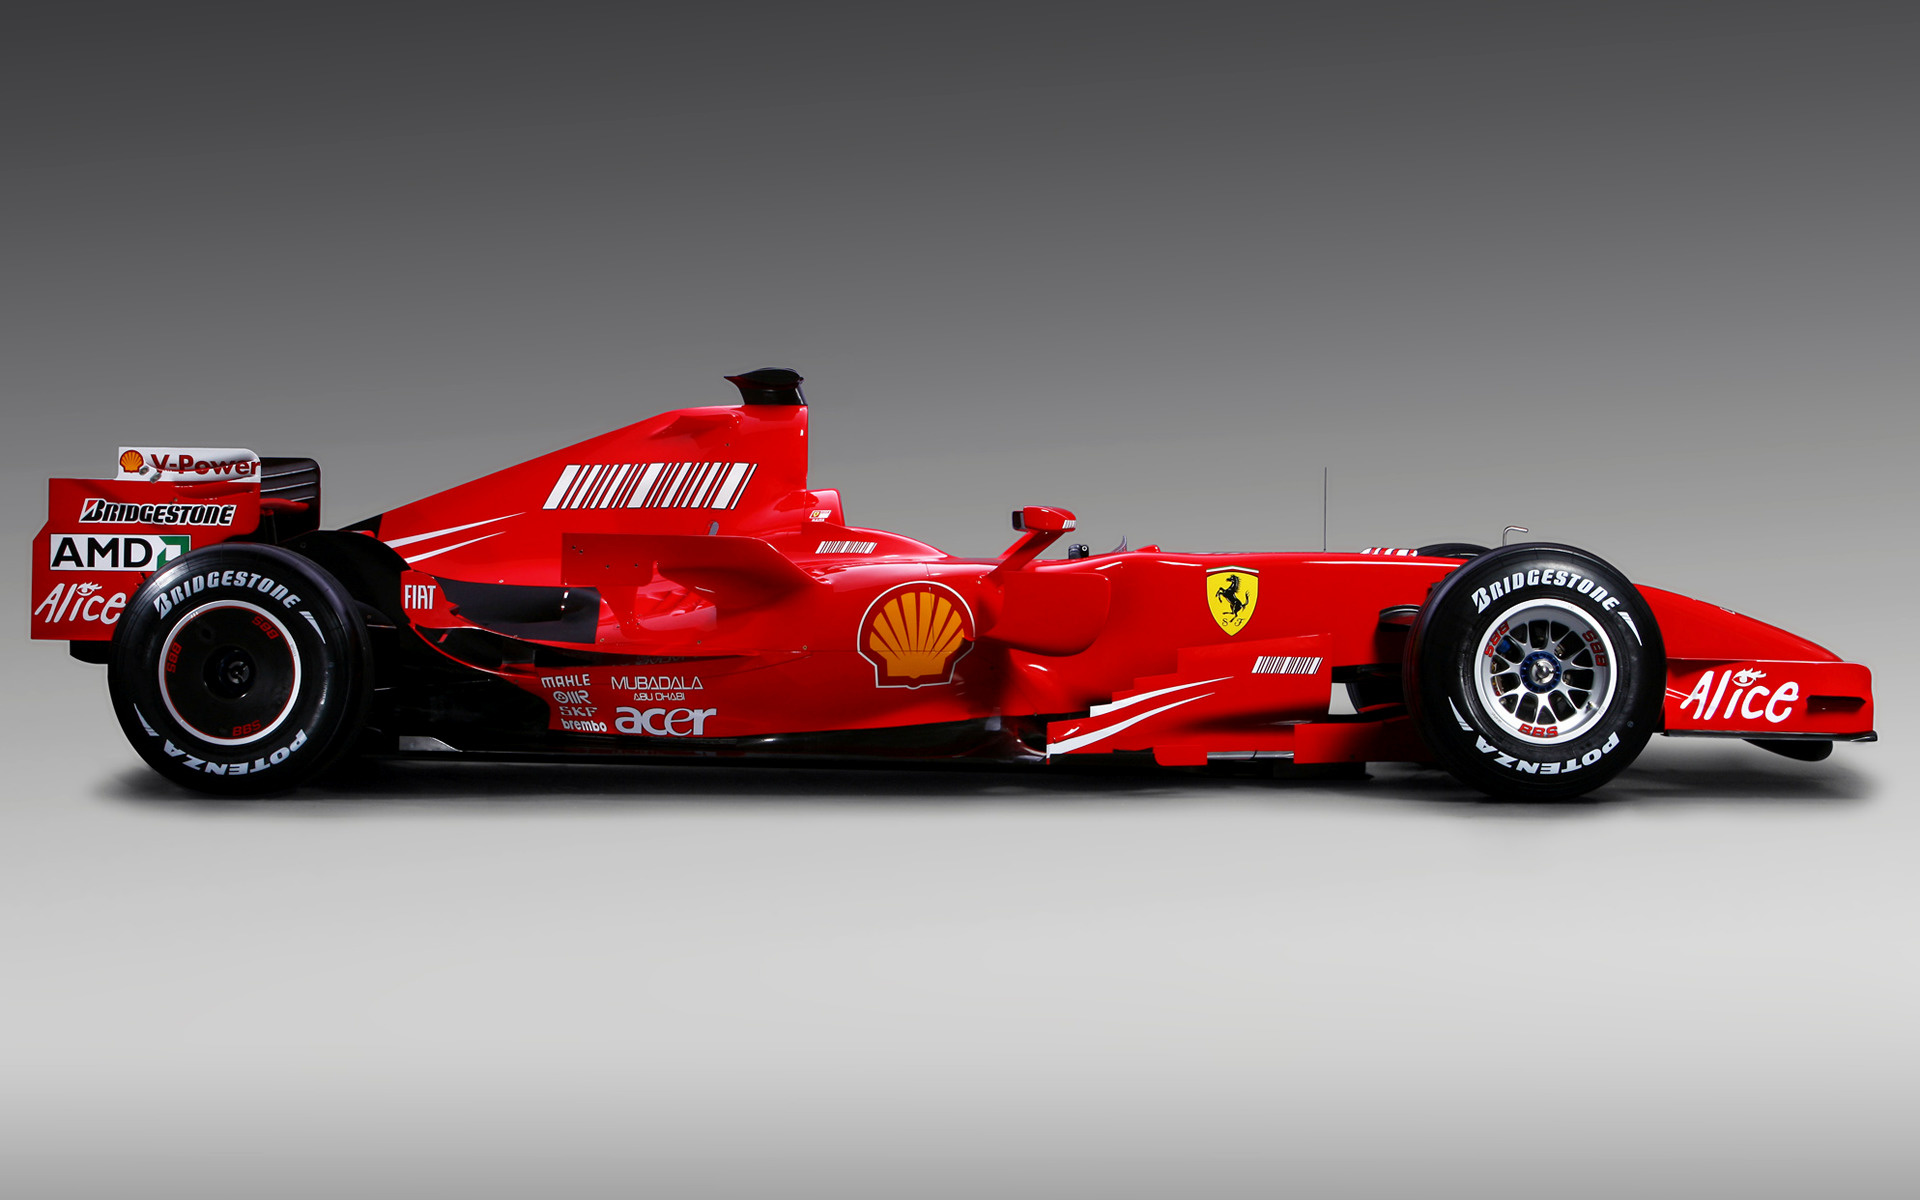 2007 Ferrari F2007 - Wallpapers and HD Images | Car Pixel